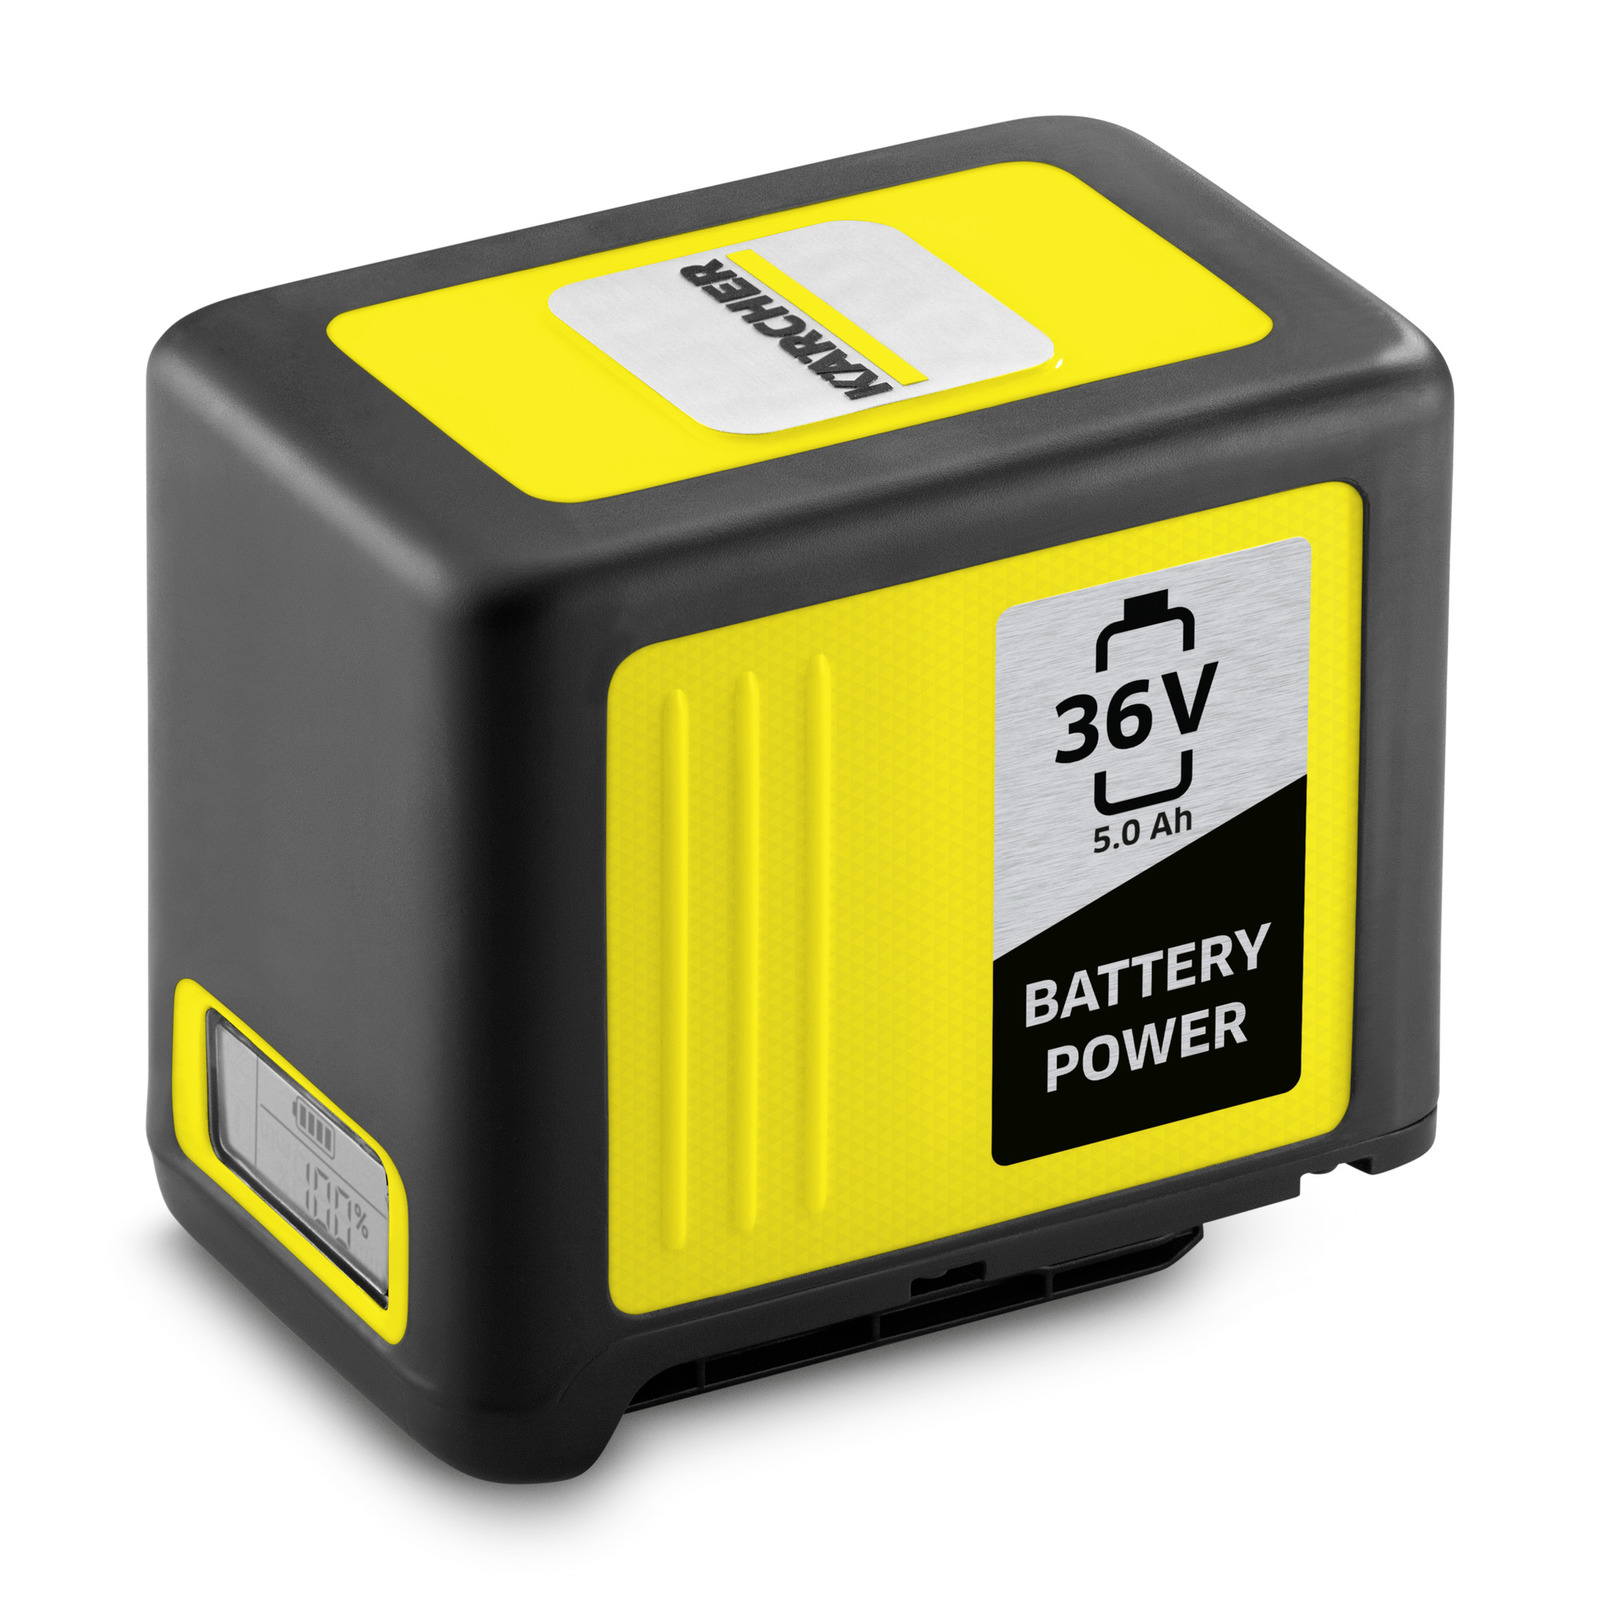 Læge skyde bekymre 36 V / 5,0 Ah Kärcher Battery Power batteri | Kärcher Danmark